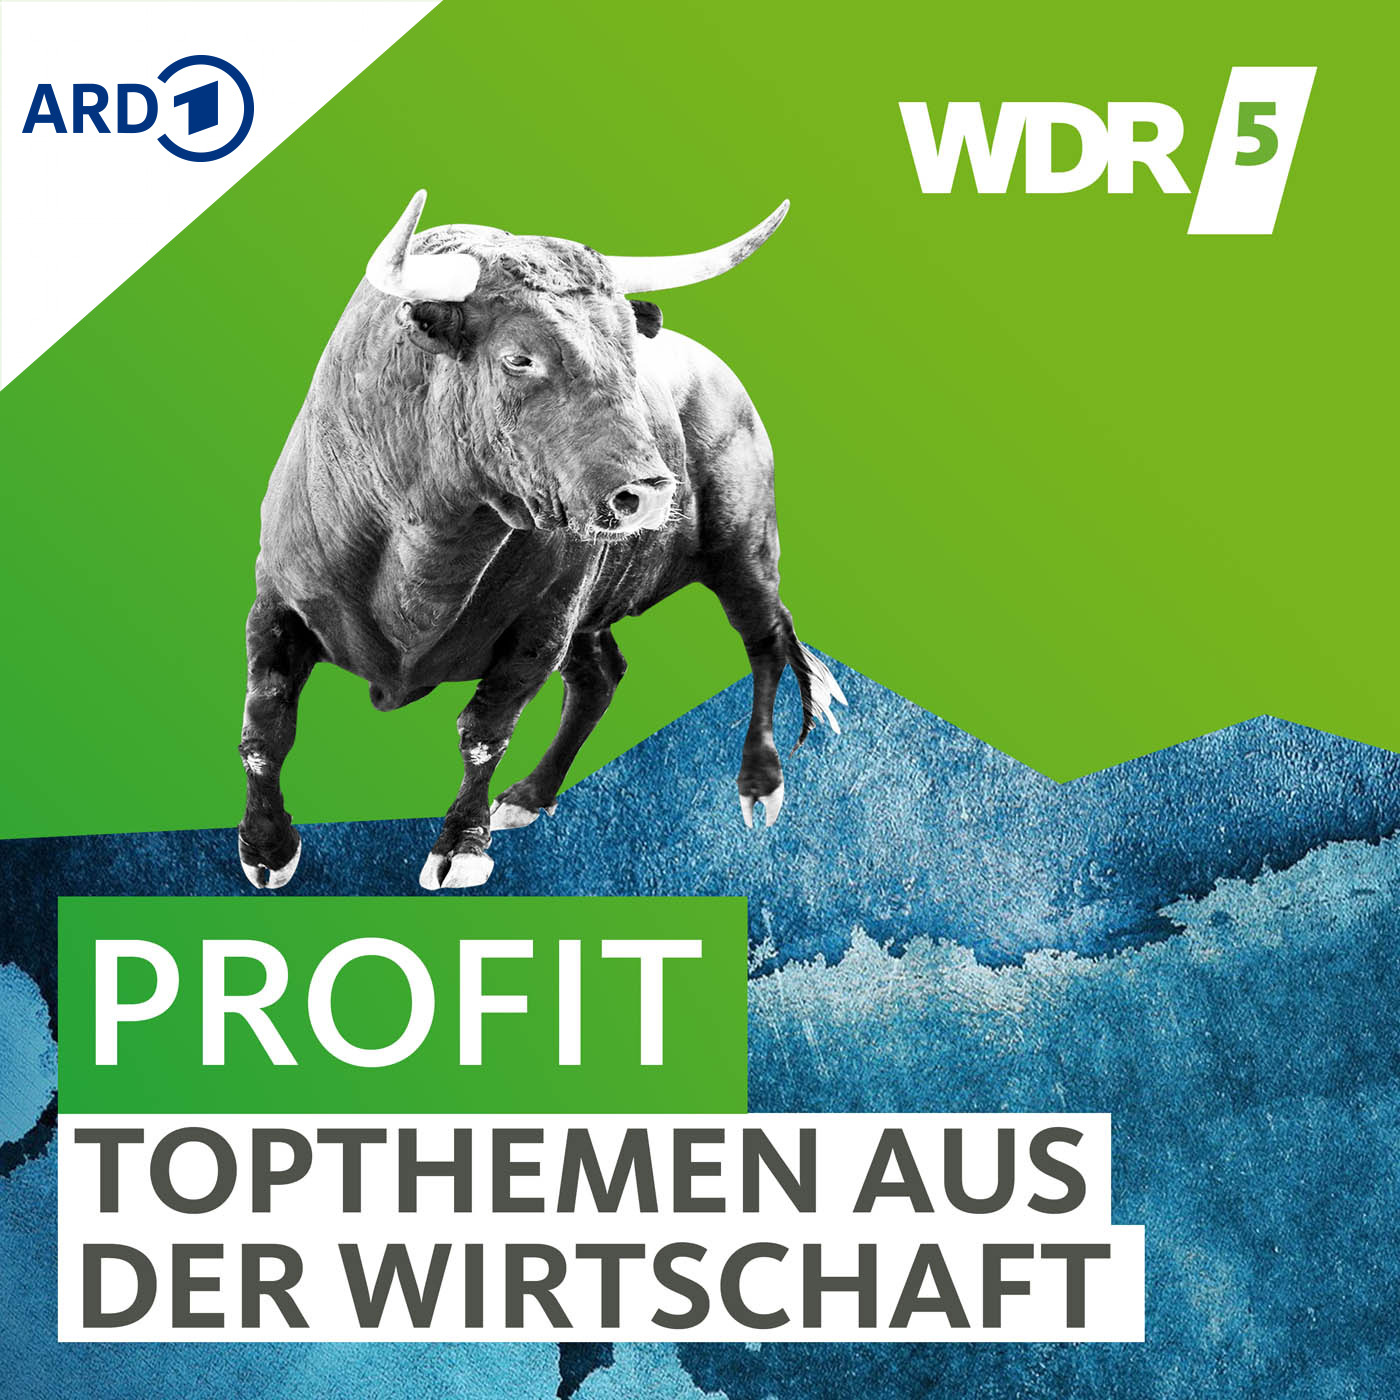 WDR 5 Profit – Topthemen aus der Wirtschaft